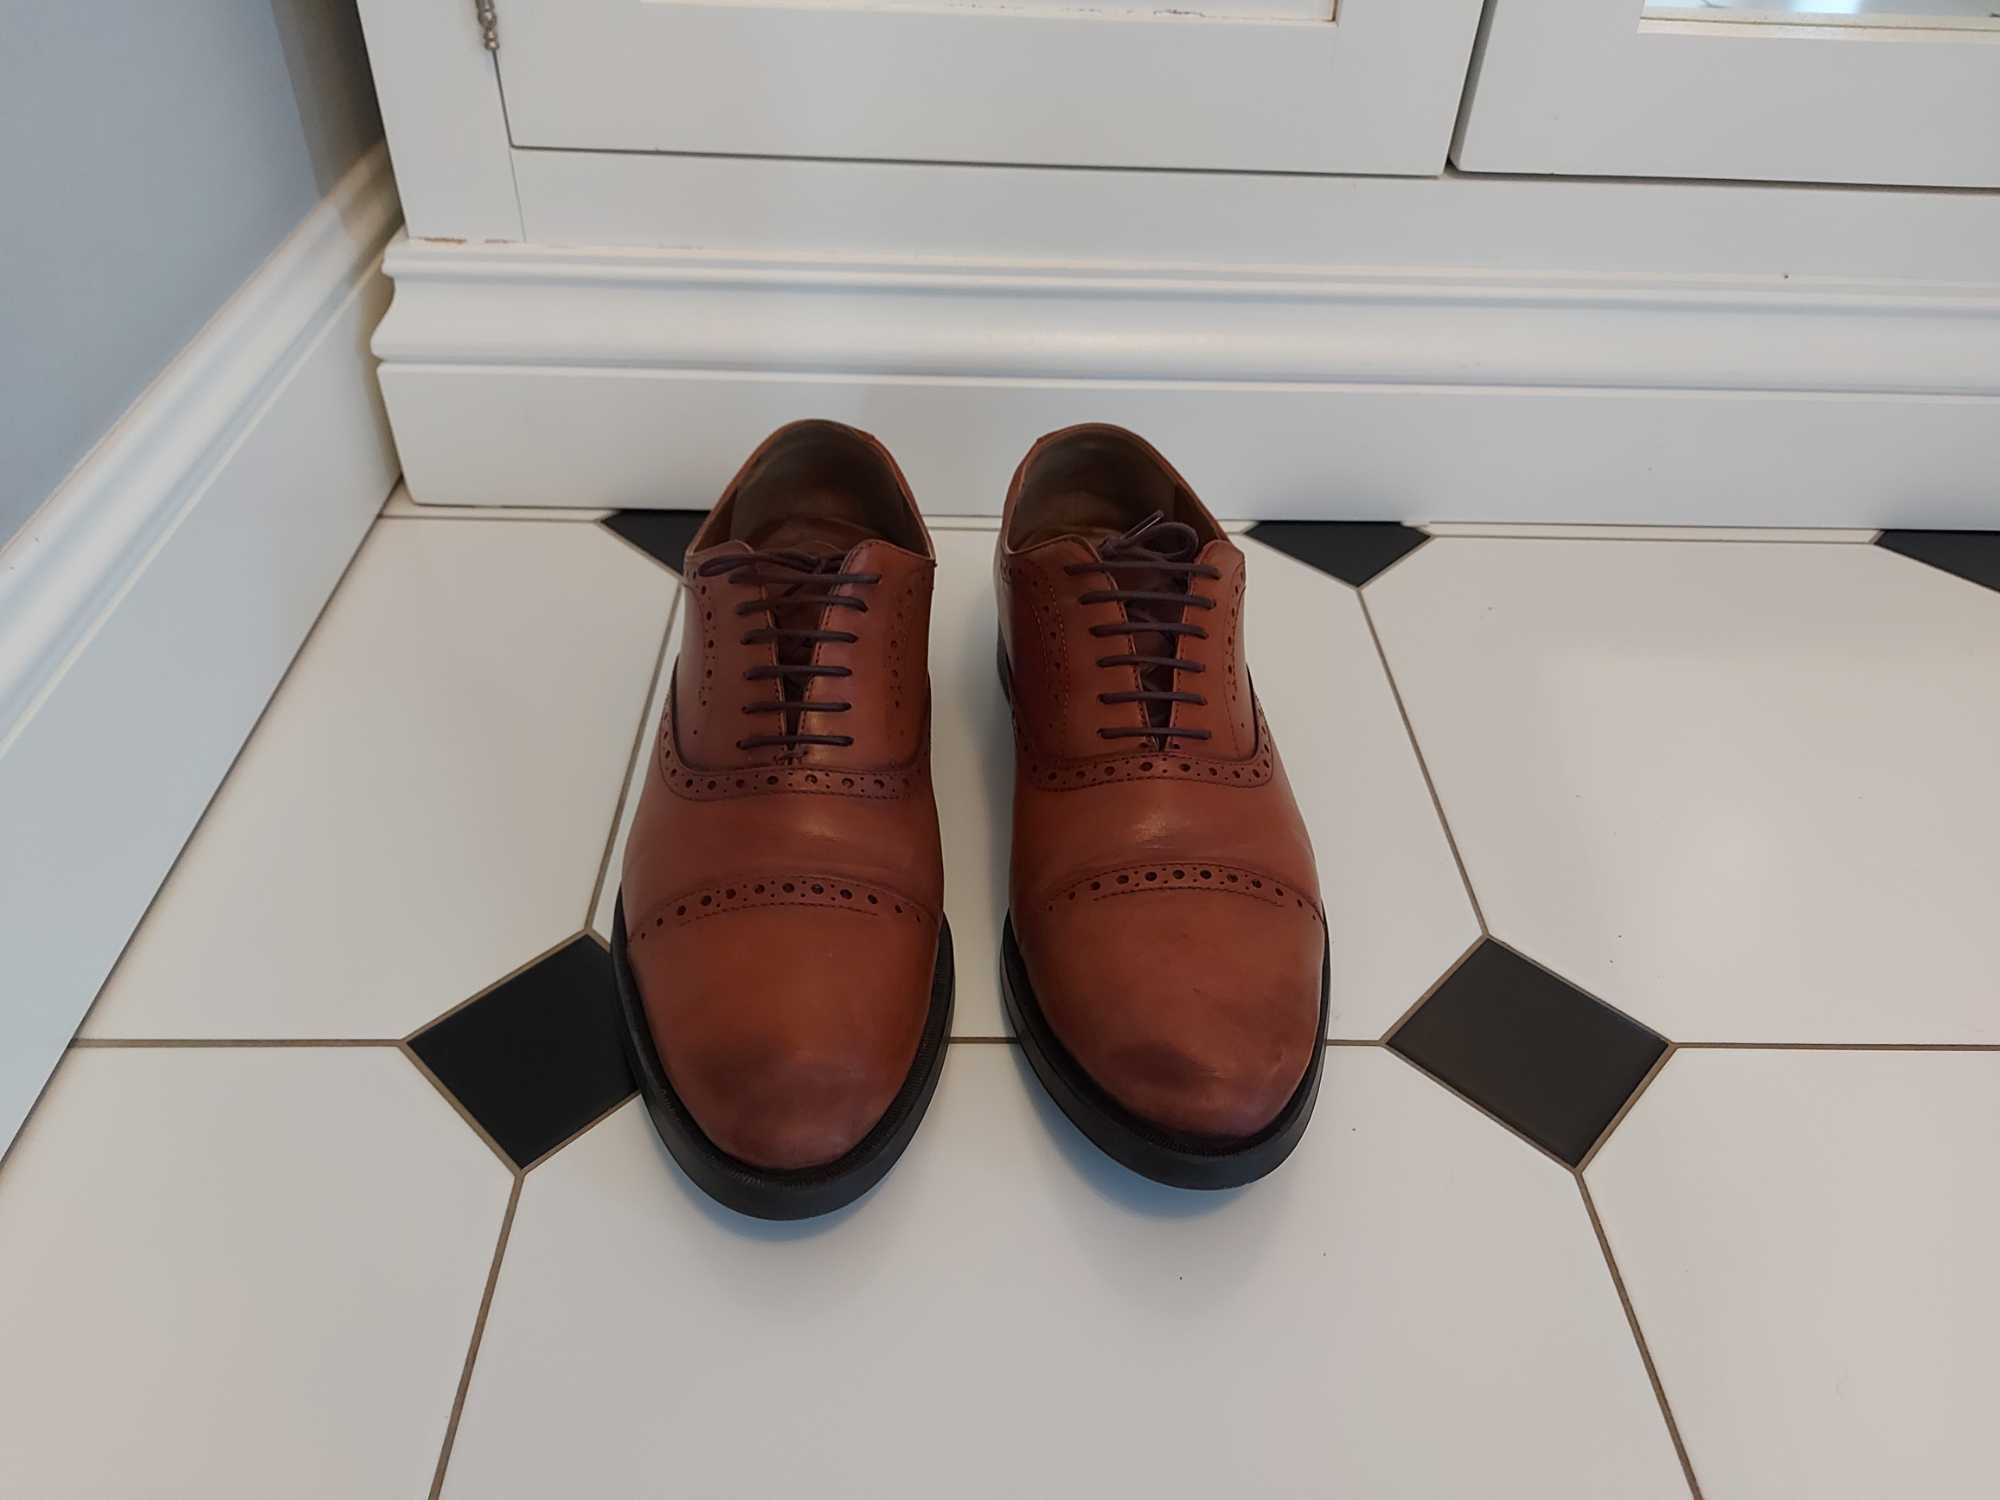 Buty pantofle męskie skórzane brogsy Zara rozm.44=29,5cm dł. wkładki